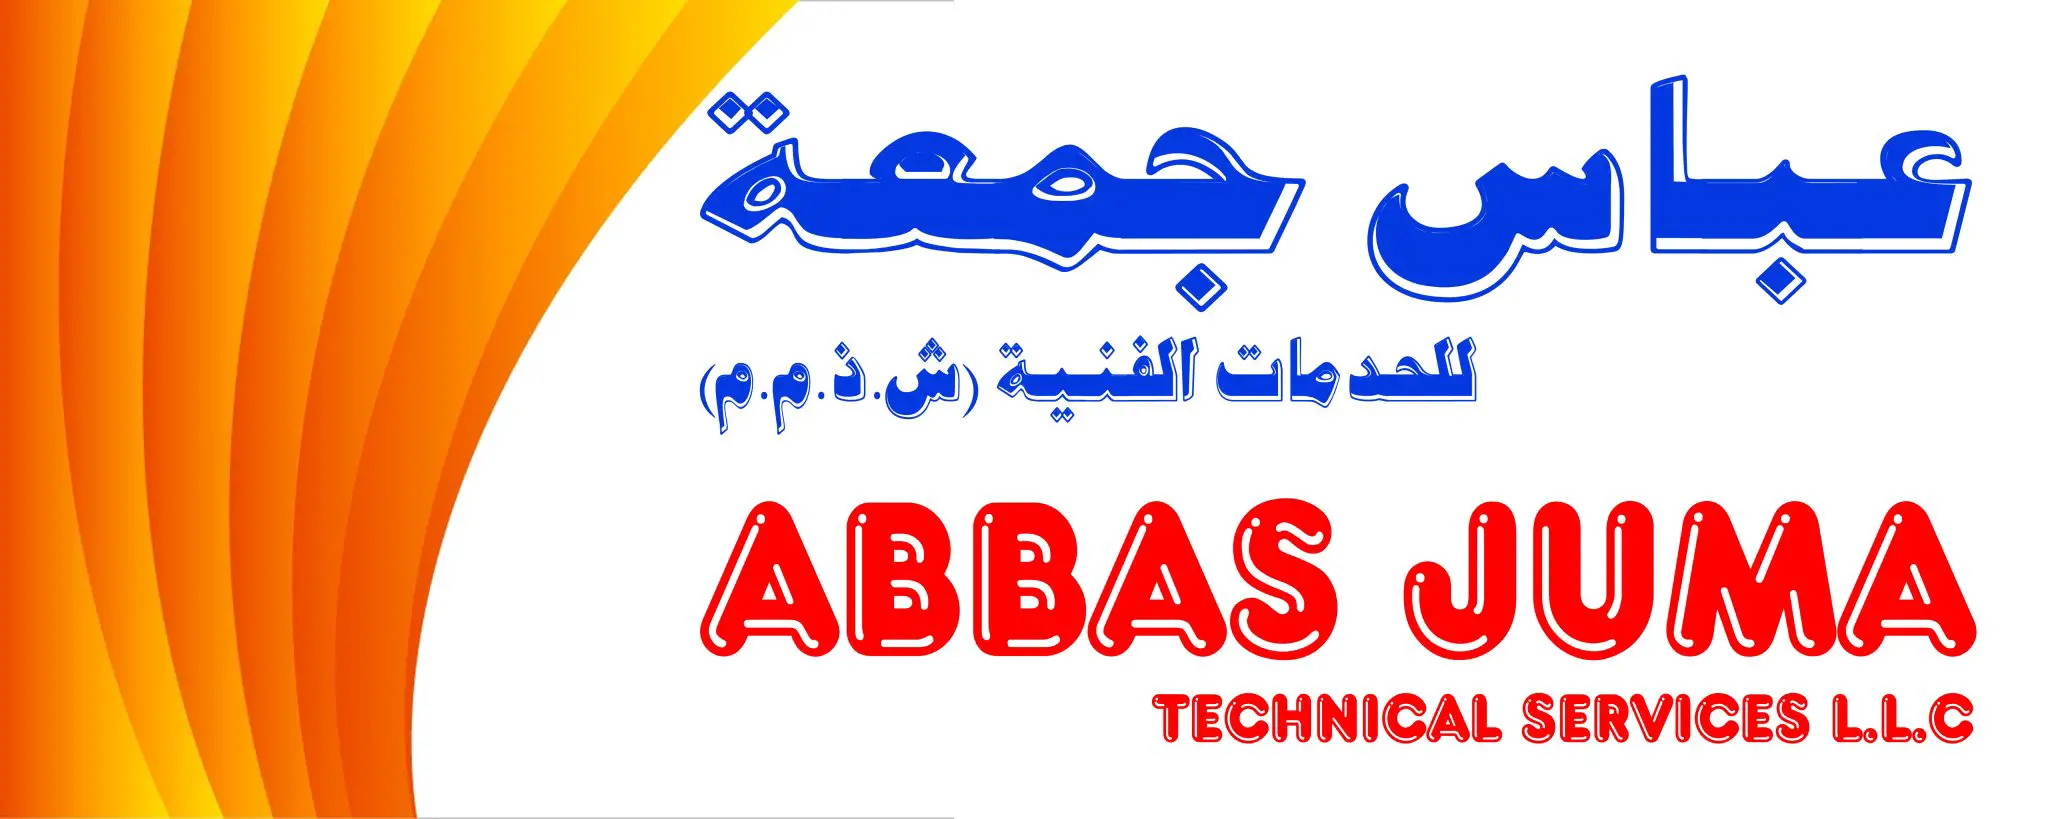 Abbas Juma Technical Services LLC